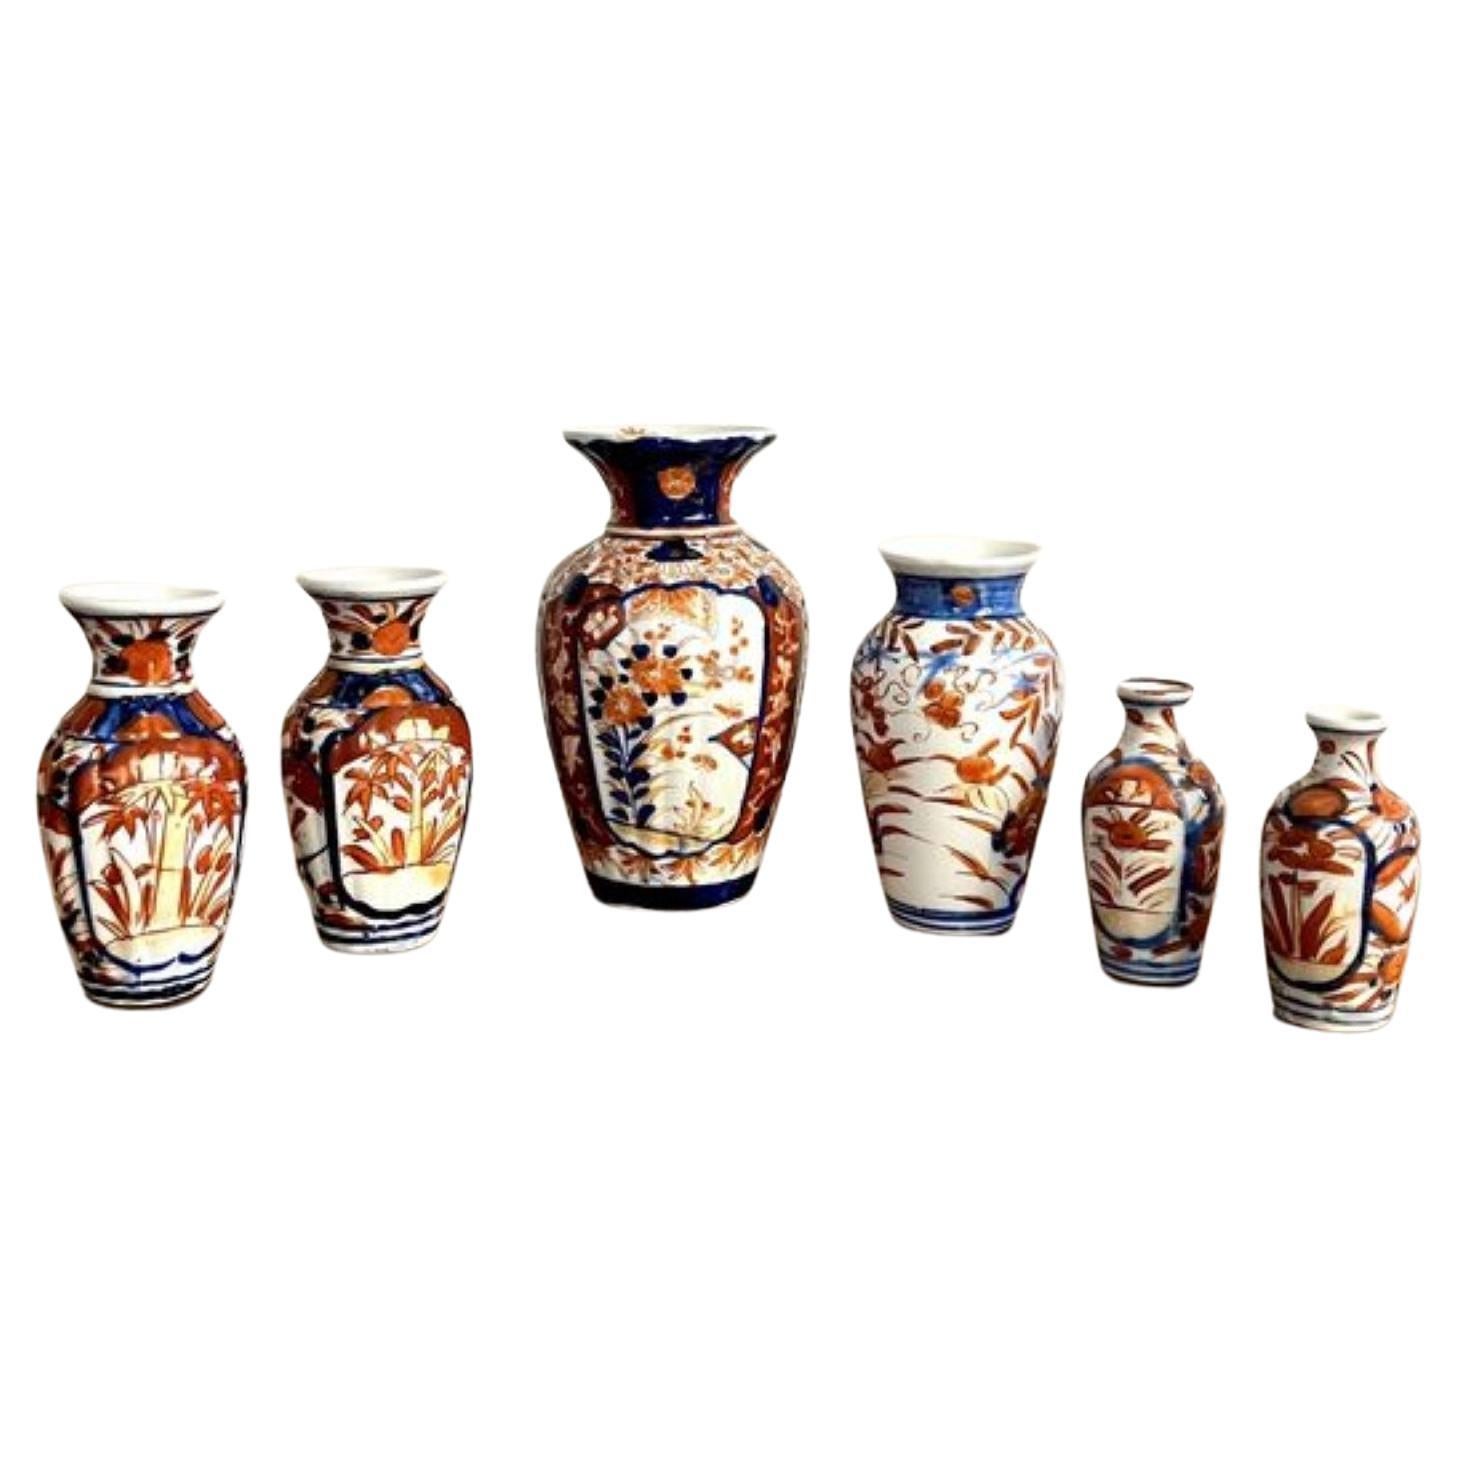 Merveilleuse collection de six petits vases imari japonais anciens